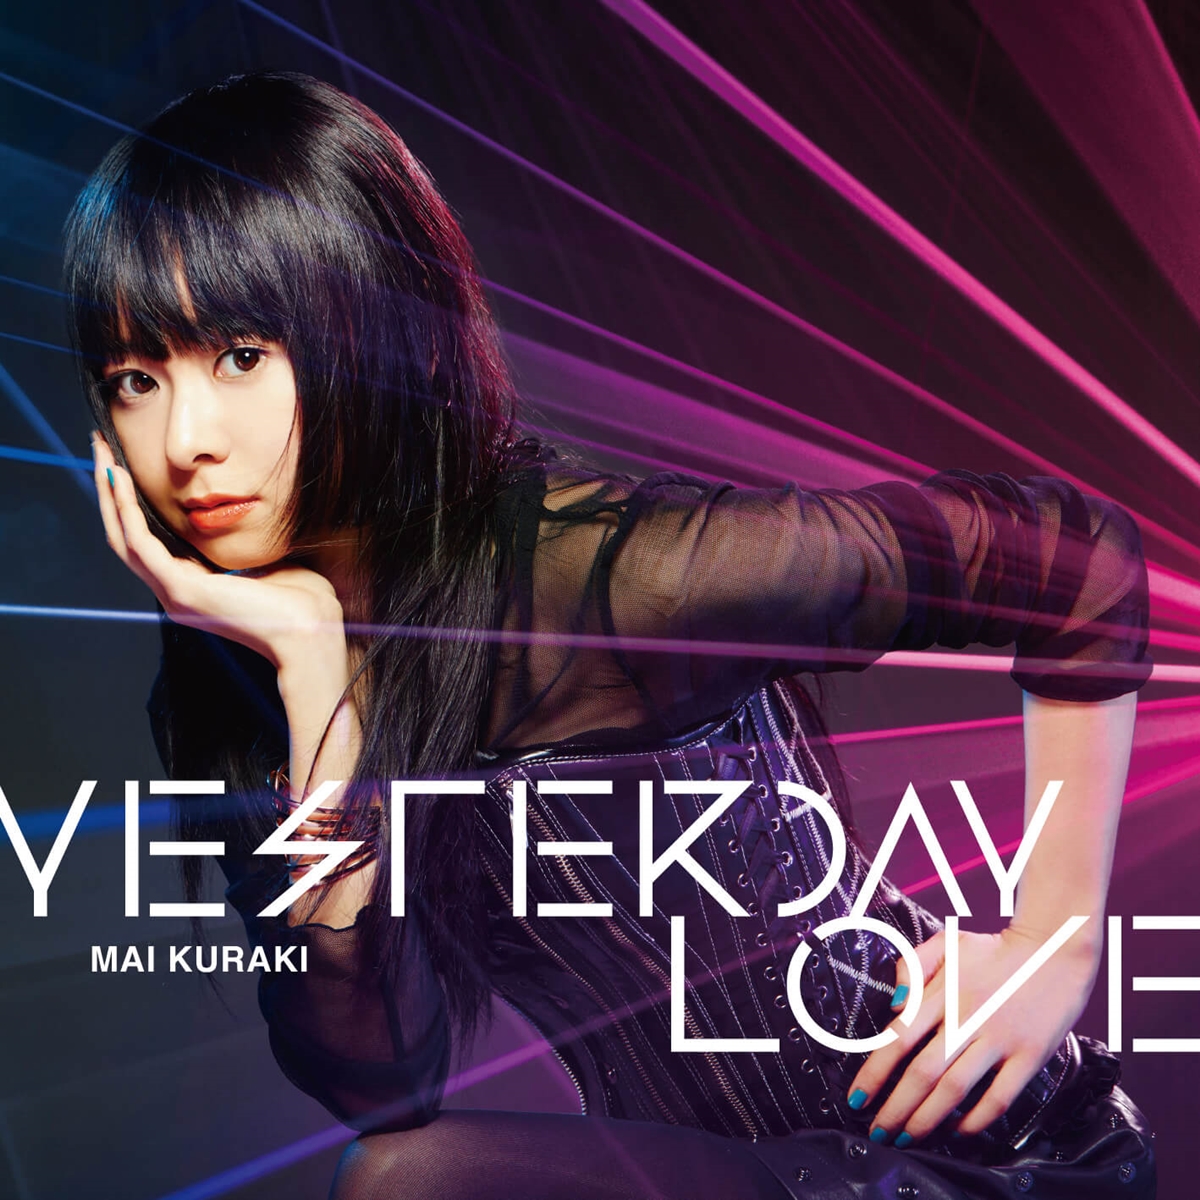 Cover art for『Mai Kuraki - YESTERDAY LOVE』from the release『YESTERDAY LOVE